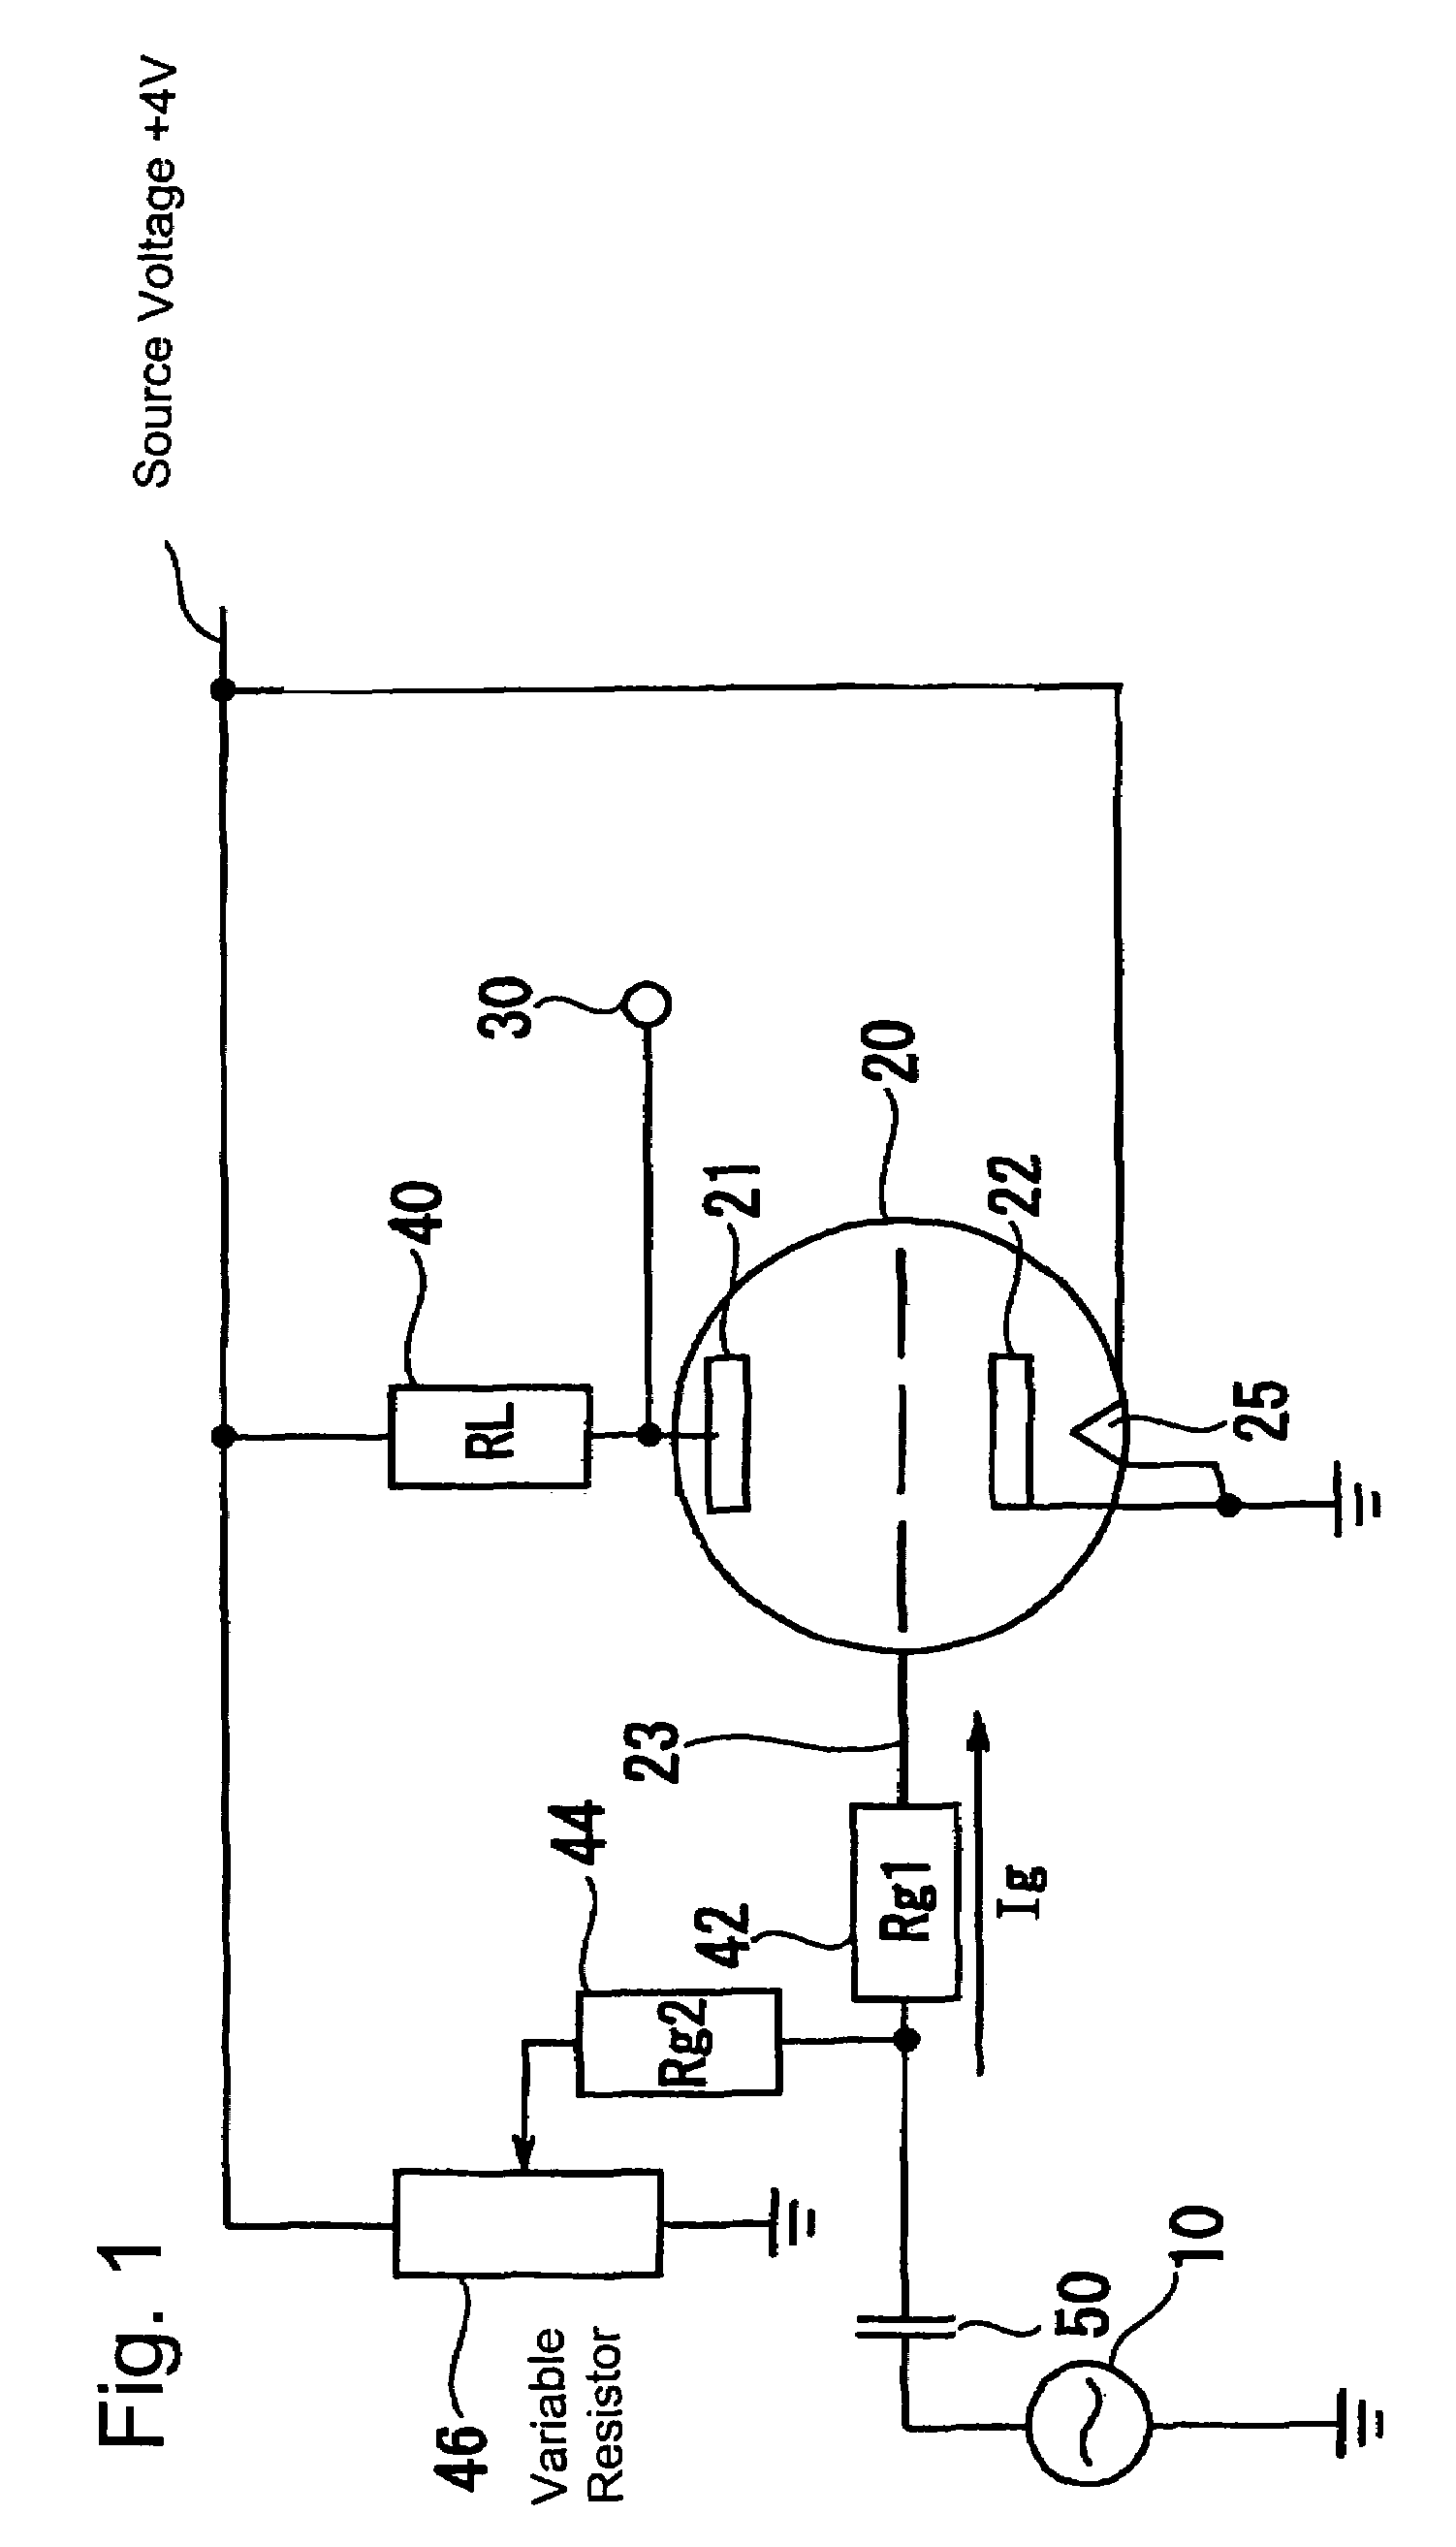 Vacuum tube circuit